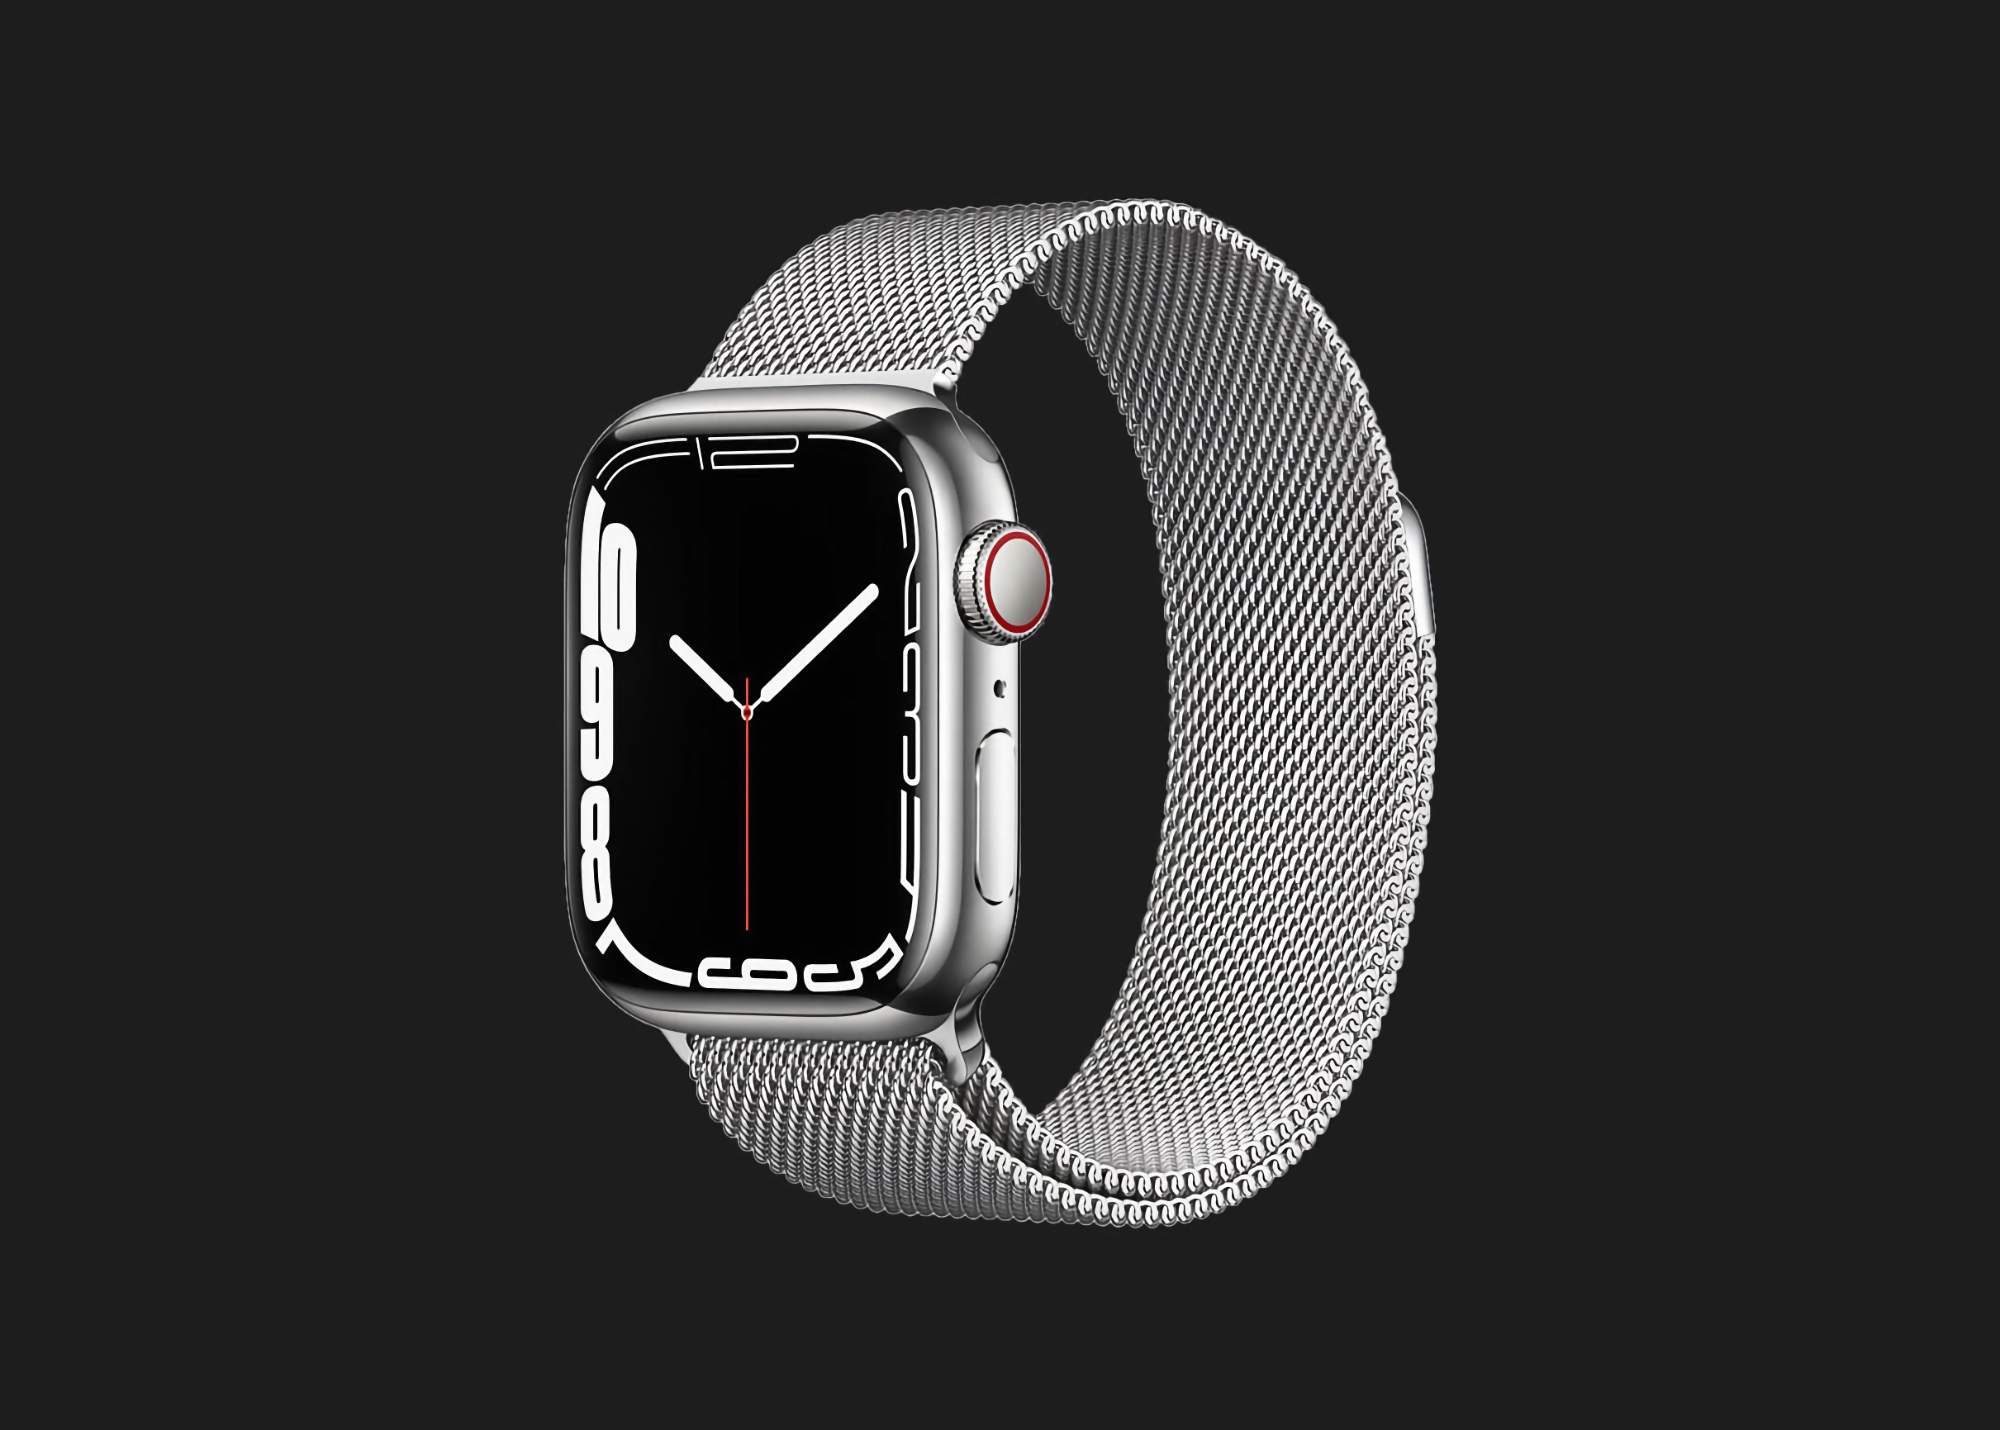 Offerta limitata nel tempo: Apple Watch Series 7 con supporto mobile e cassa in acciaio inossidabile disponibile su Amazon con uno sconto di 78 dollari